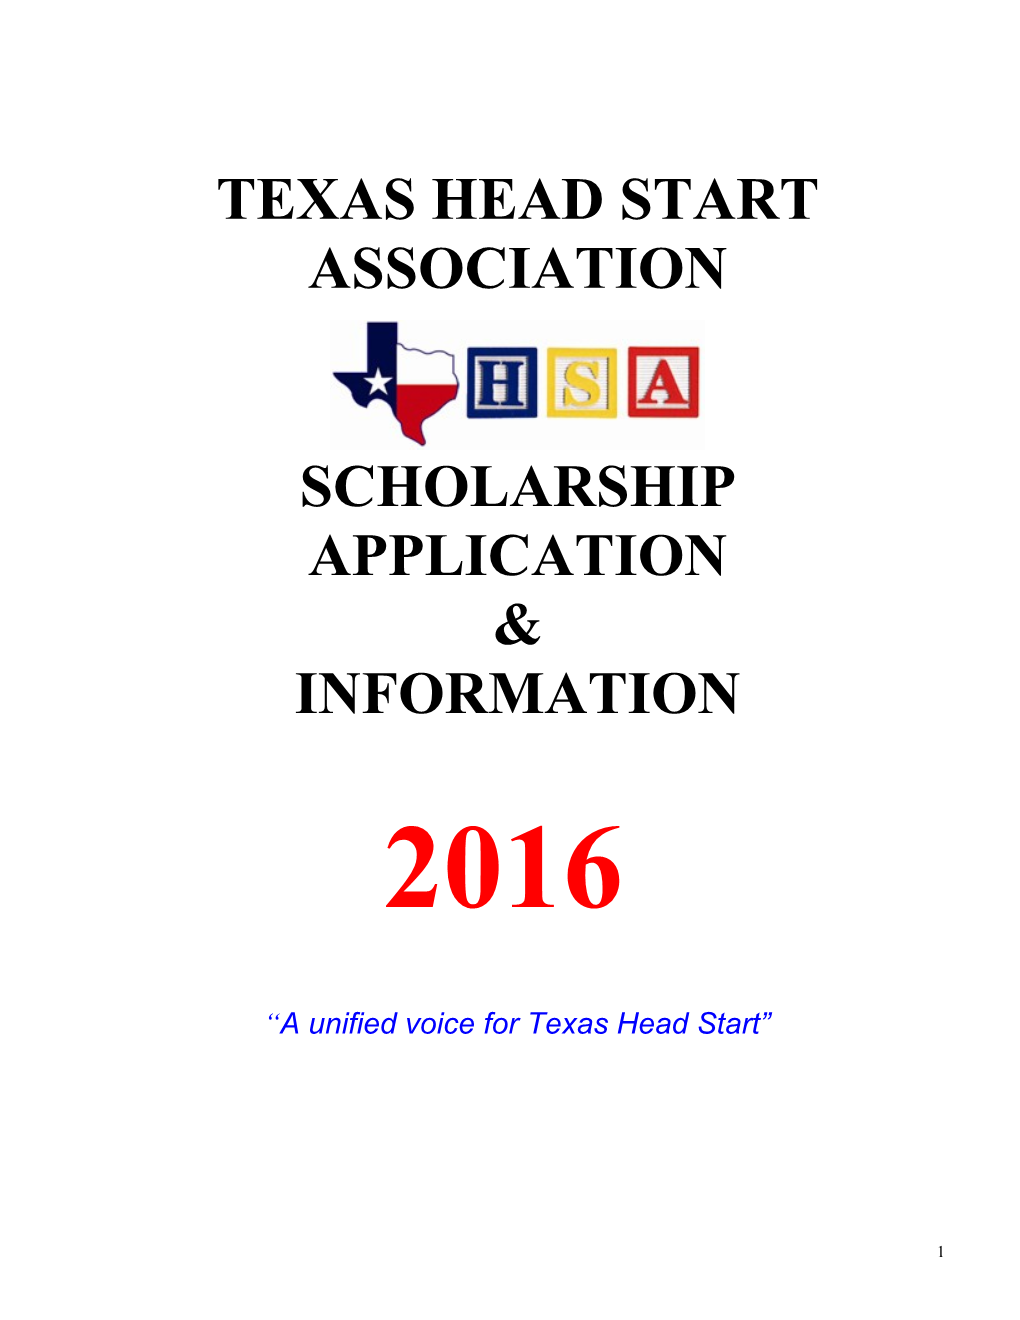 Texas Head Start